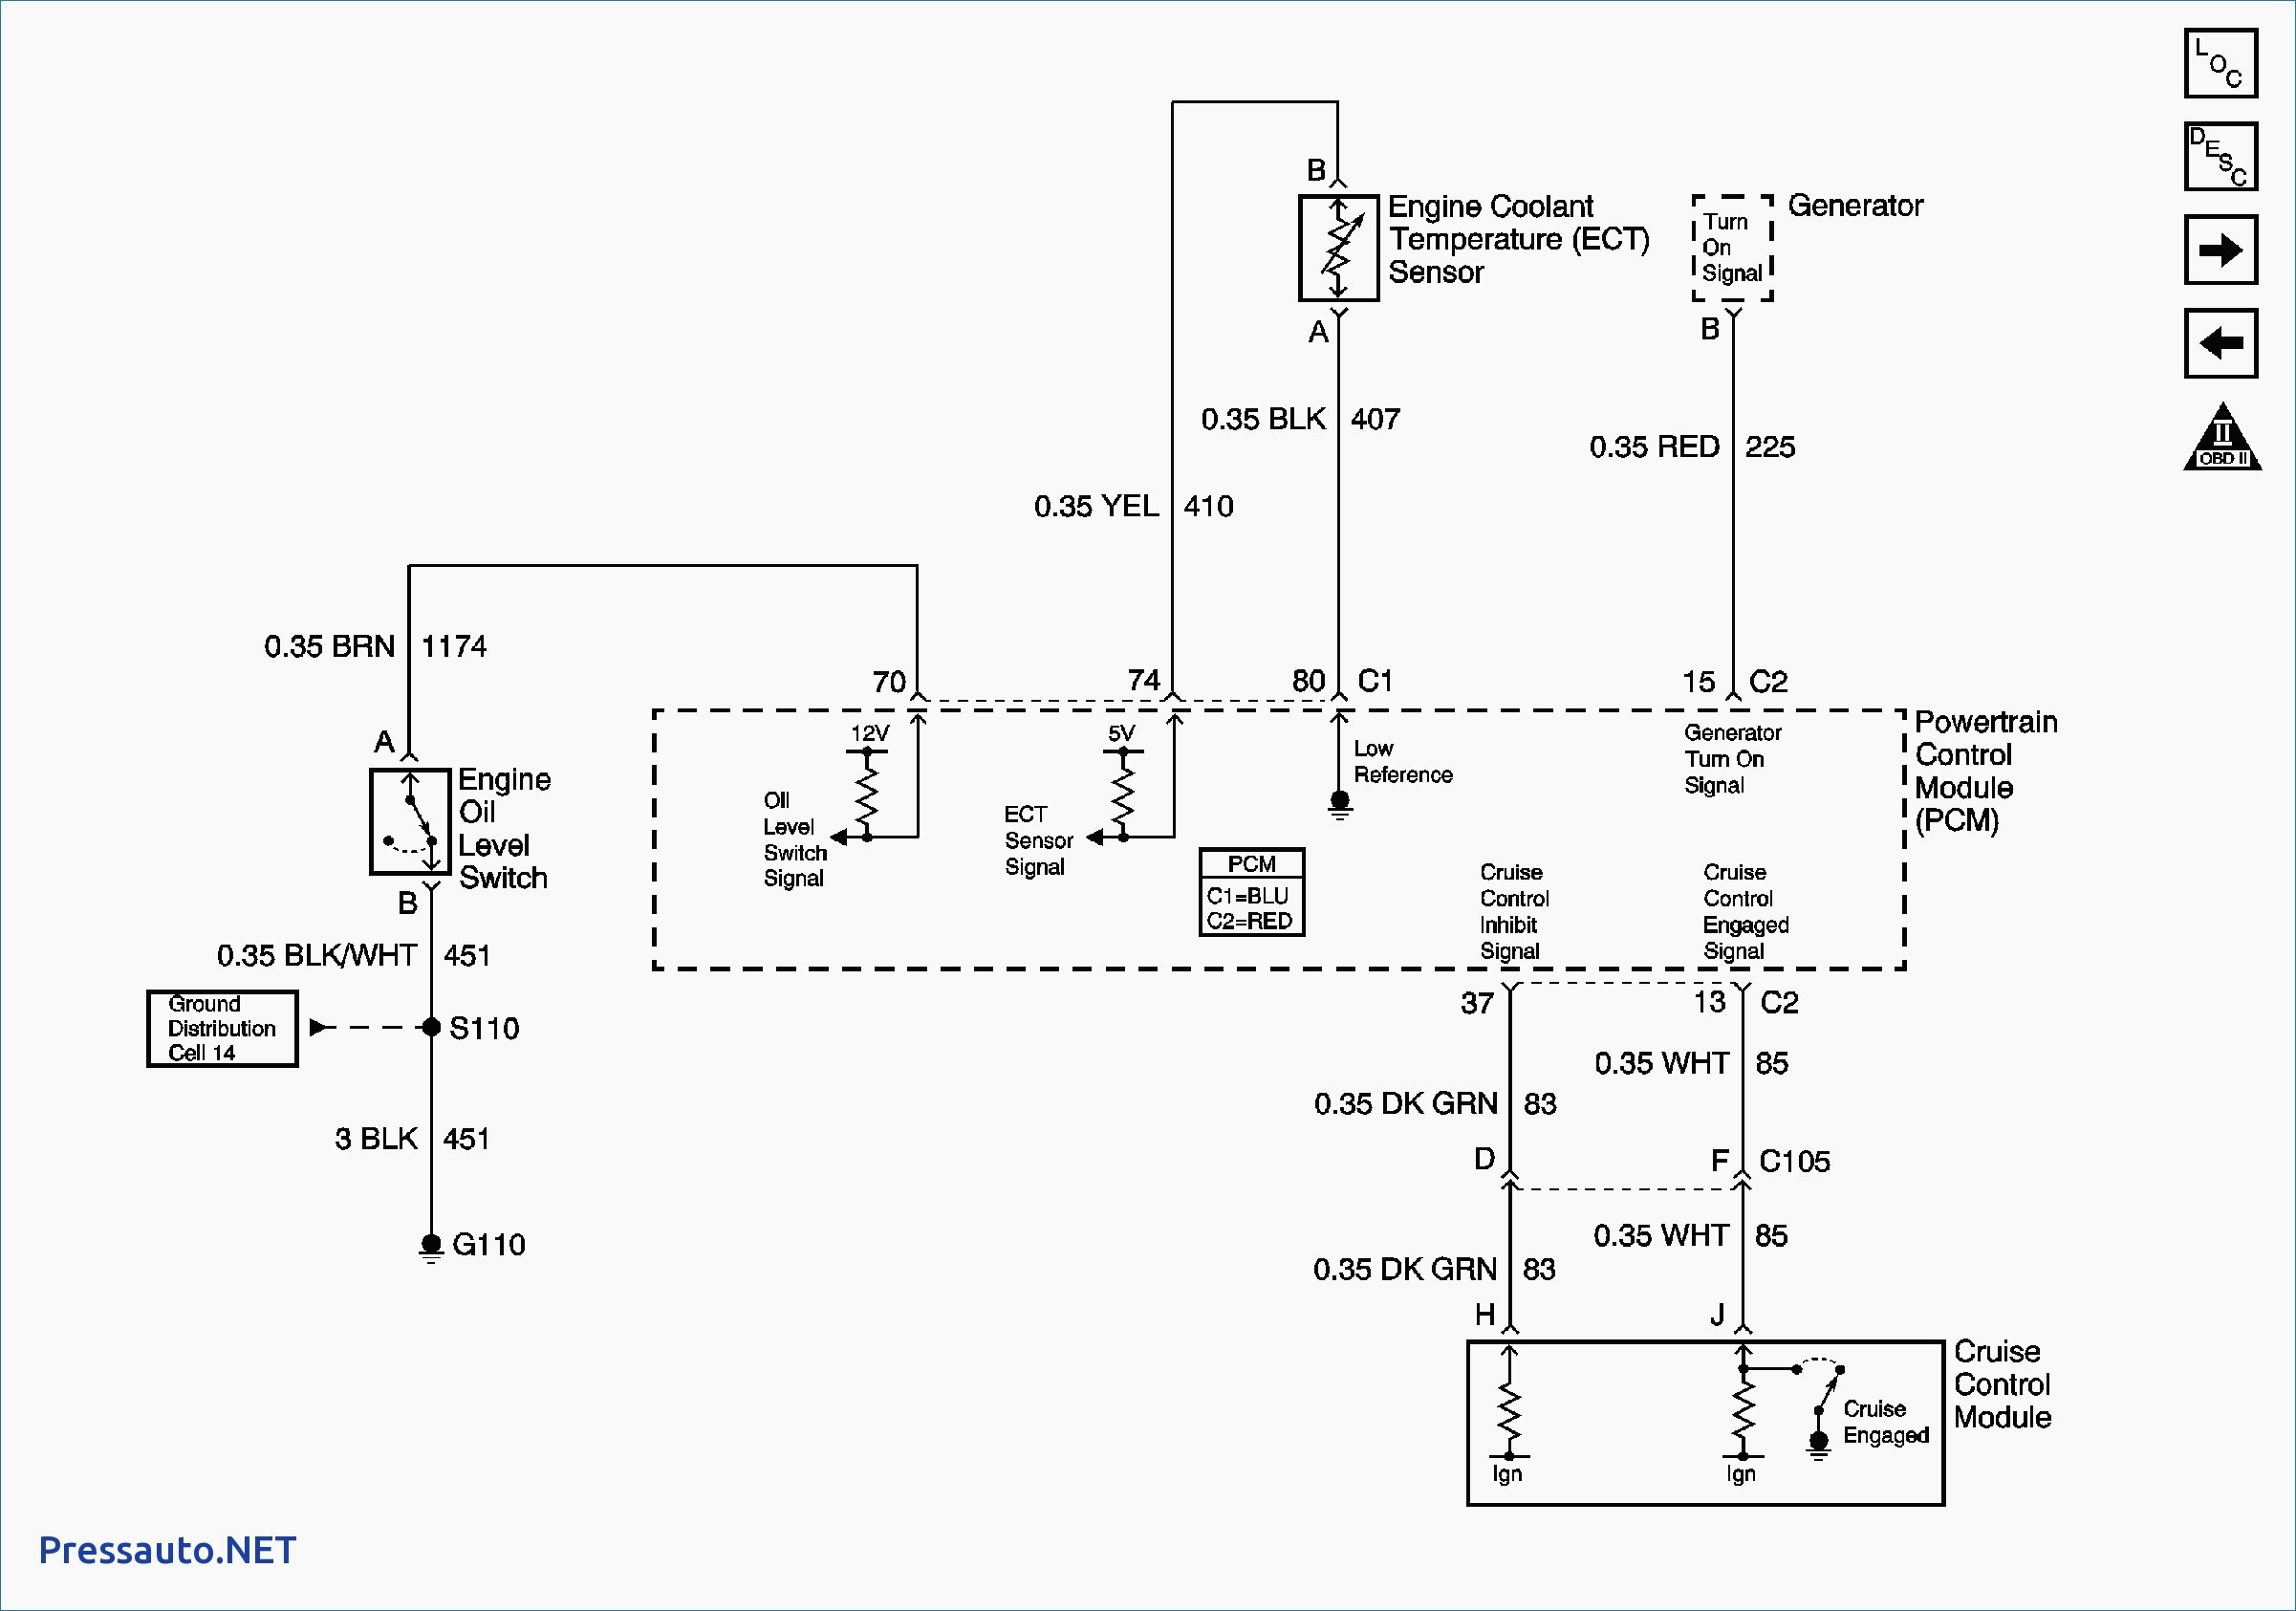 Square D Air pressor Pressure Switch Wiring Diagram Valid Air Pressor Pressure Switch Wiring Diagram